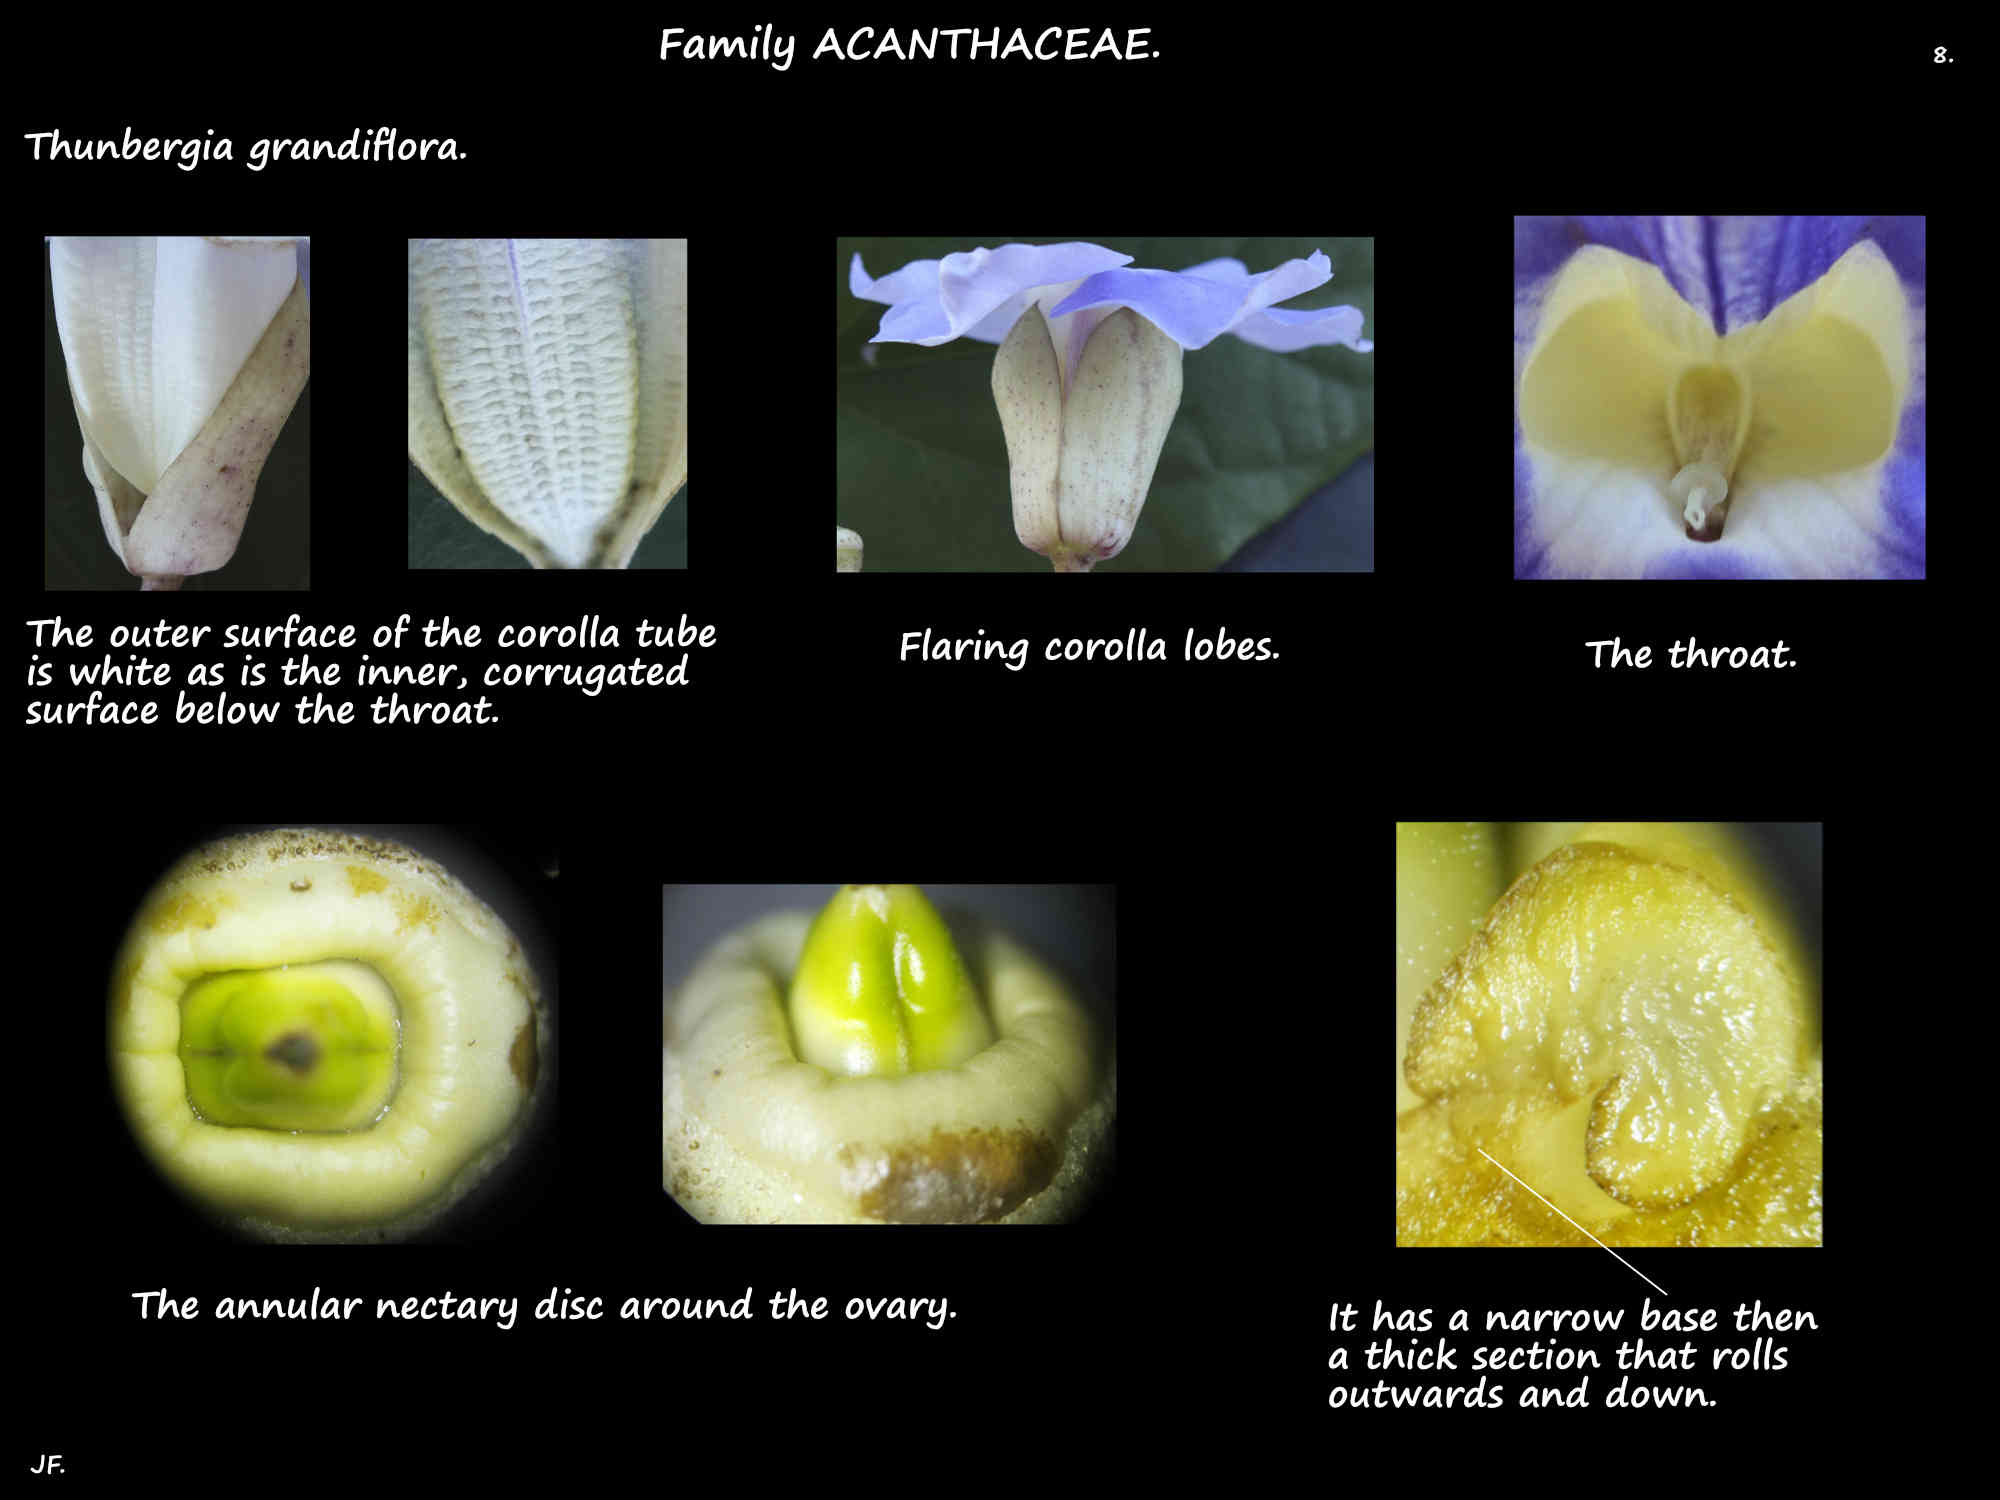 8 The nectary of Thunbergia grandiflora flowers